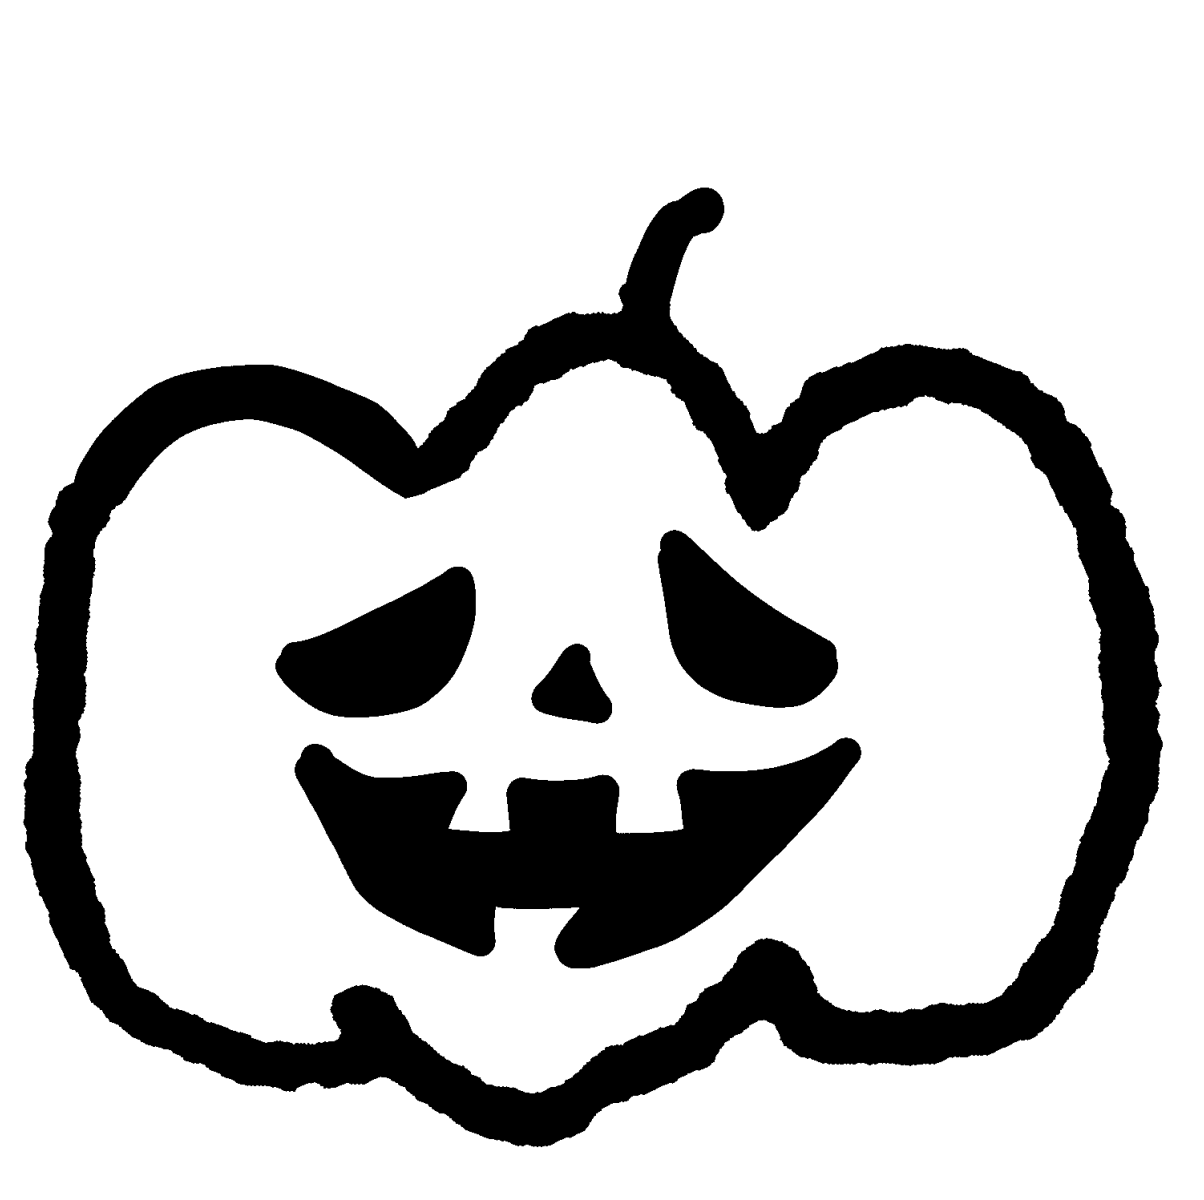 ハロウィン カボチャのおばけ Halloween's Jack O' Lantern Pumpkin illustration